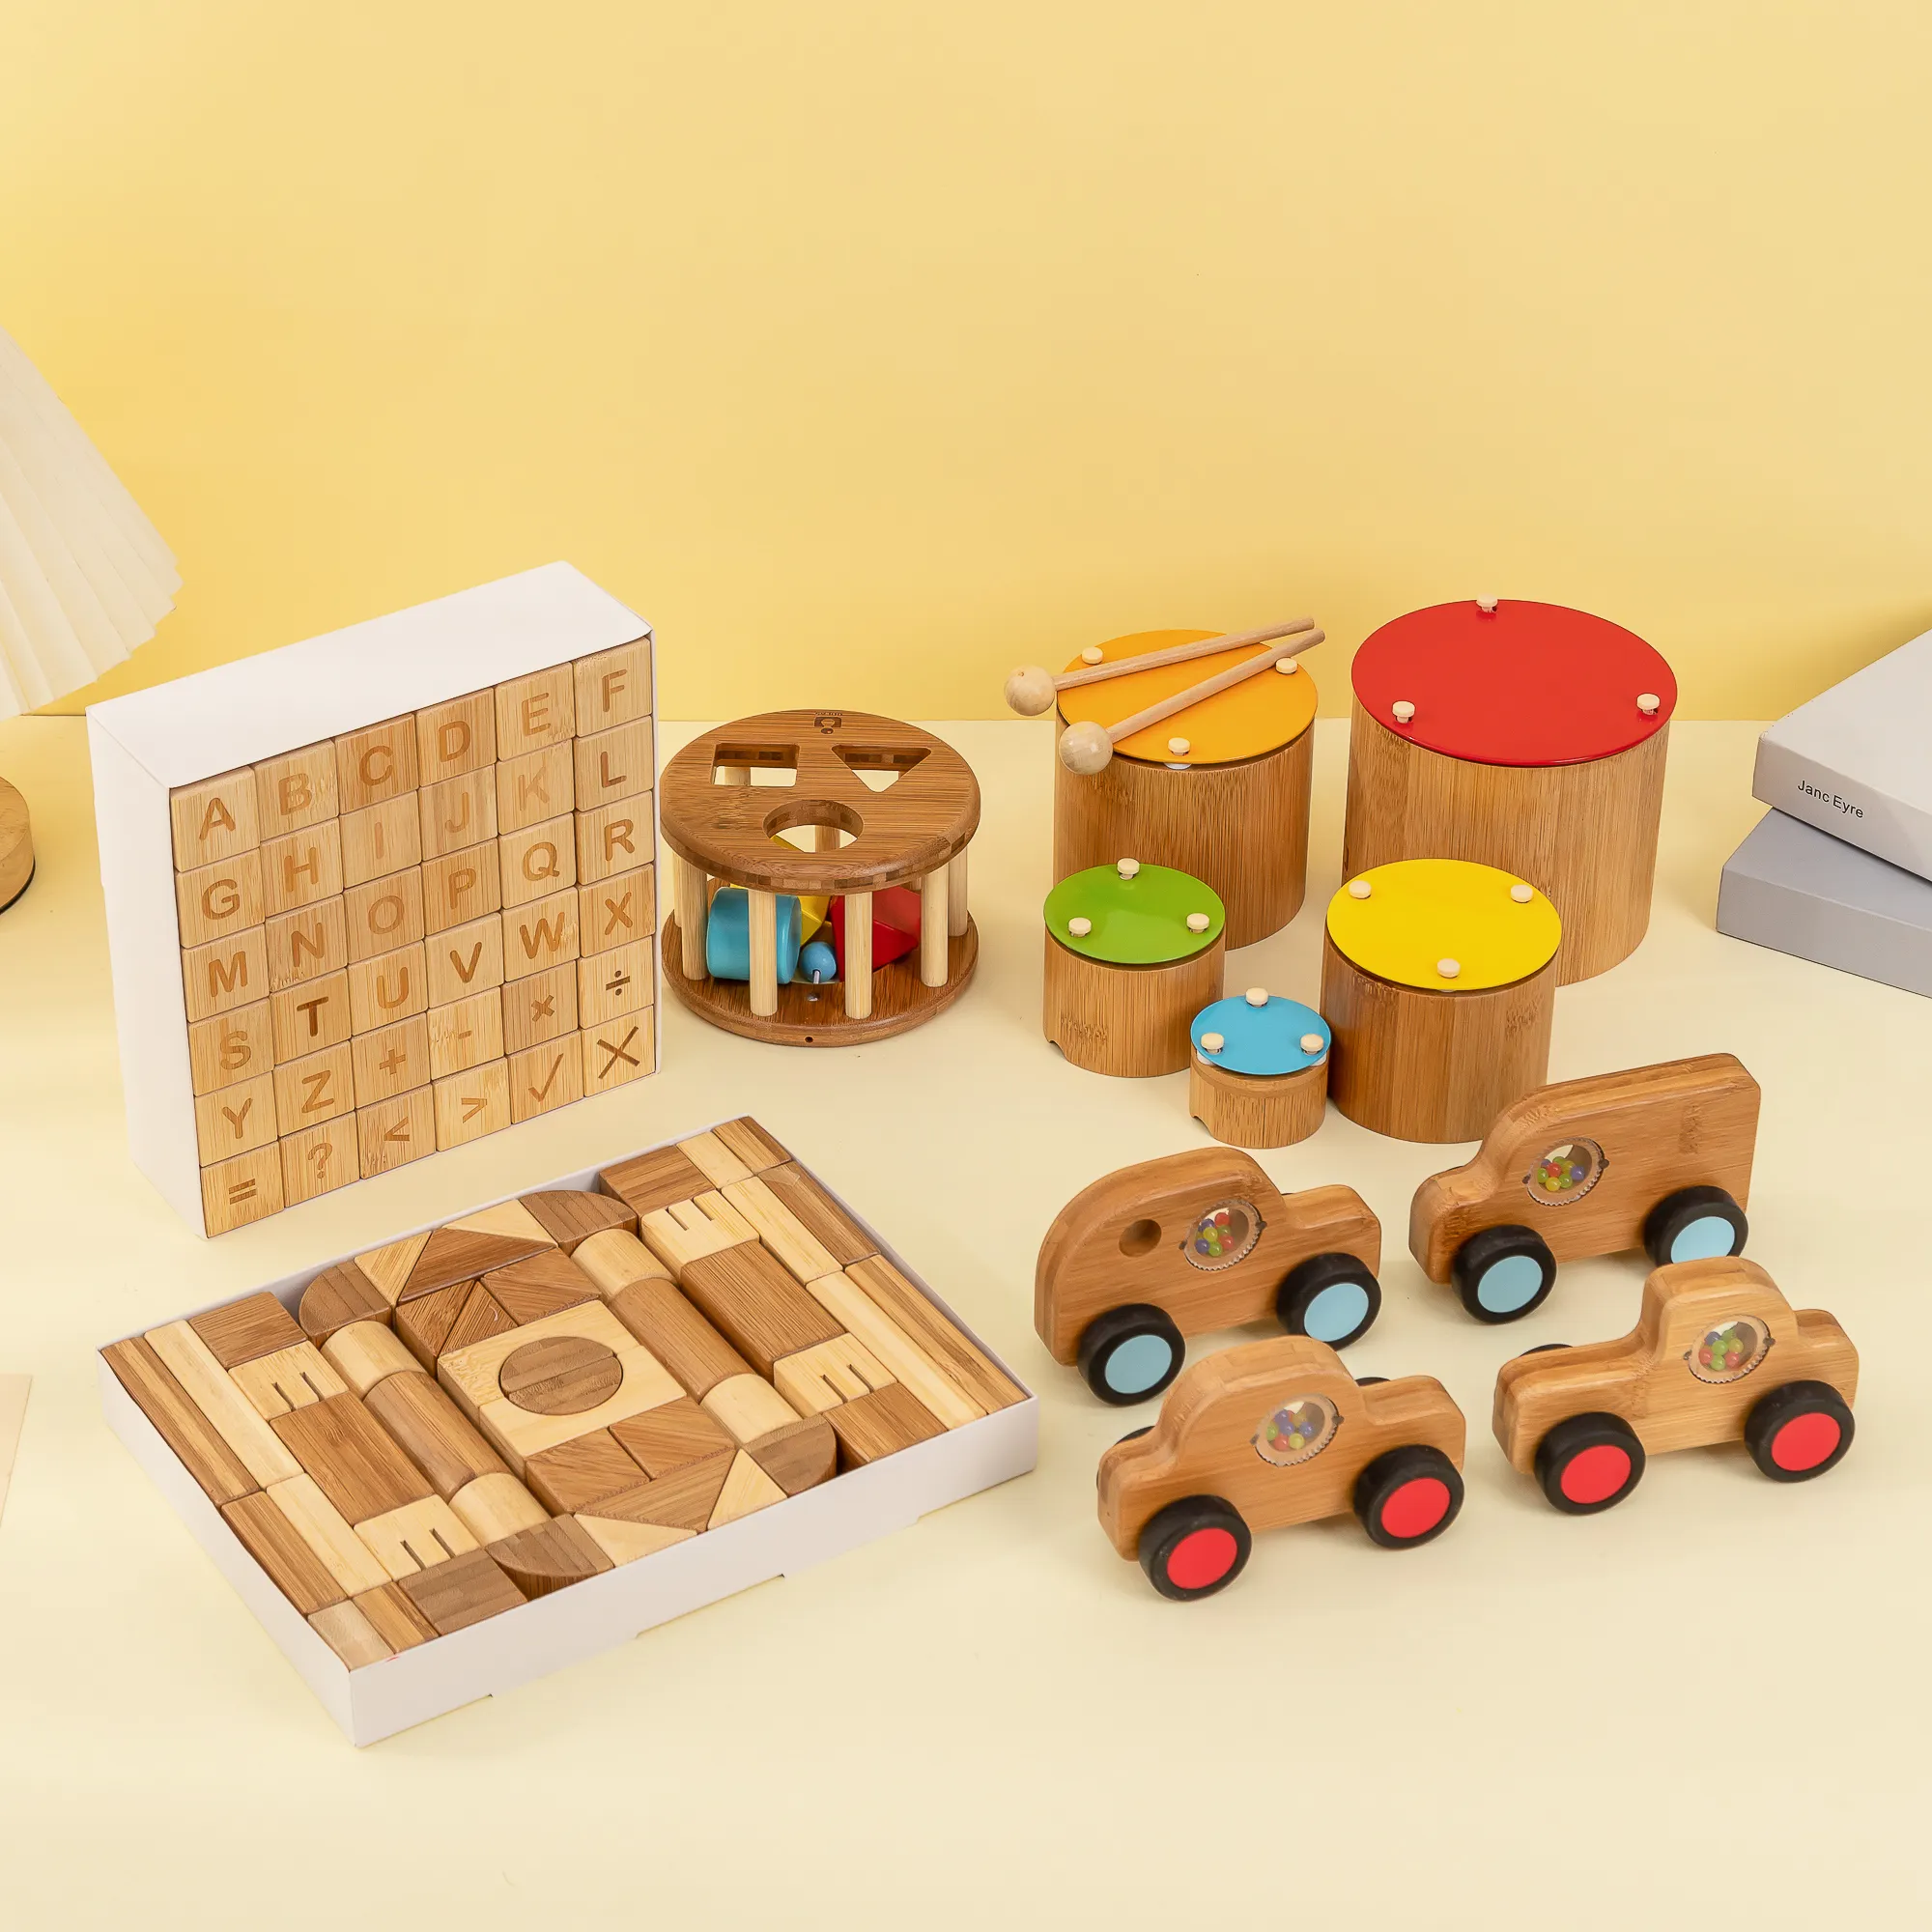 طقم ألعاب UDEAS مصنوع من خشب البامبو والطبلات القابلة للطي والشكل الموسيقي يتميز بألوان خلابة وتصميمات عصرية وأشكال متنوعة كما يتميز بمجموعة من ألعاب منتسوري الخشبية